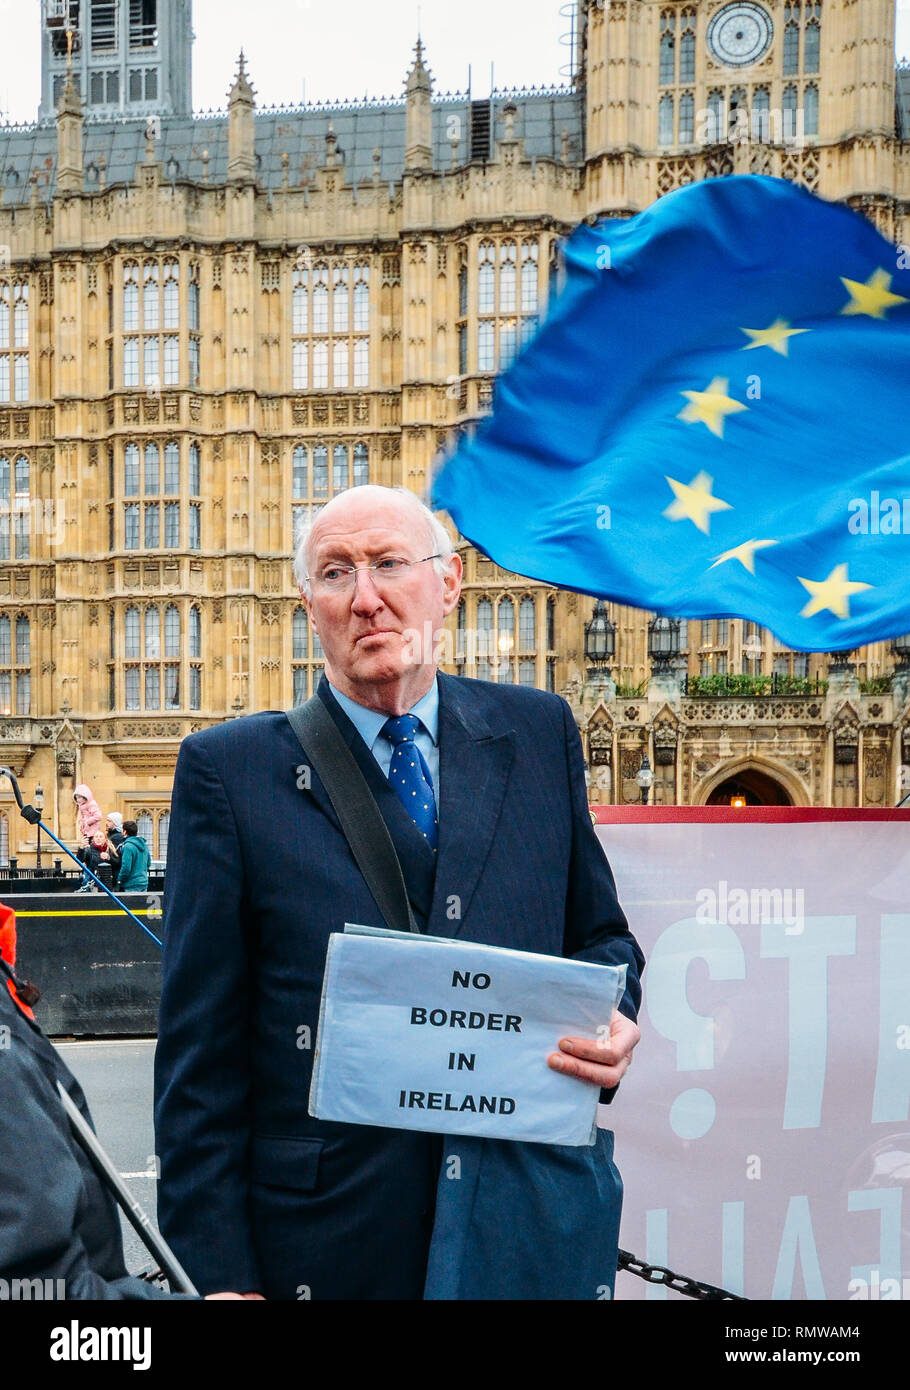 London, Regno Unito - Feb 11, 2019: uomo sorregge un semplice segno che legge nessun confine in Irlanda - messaggio Anti-Brexit Foto Stock